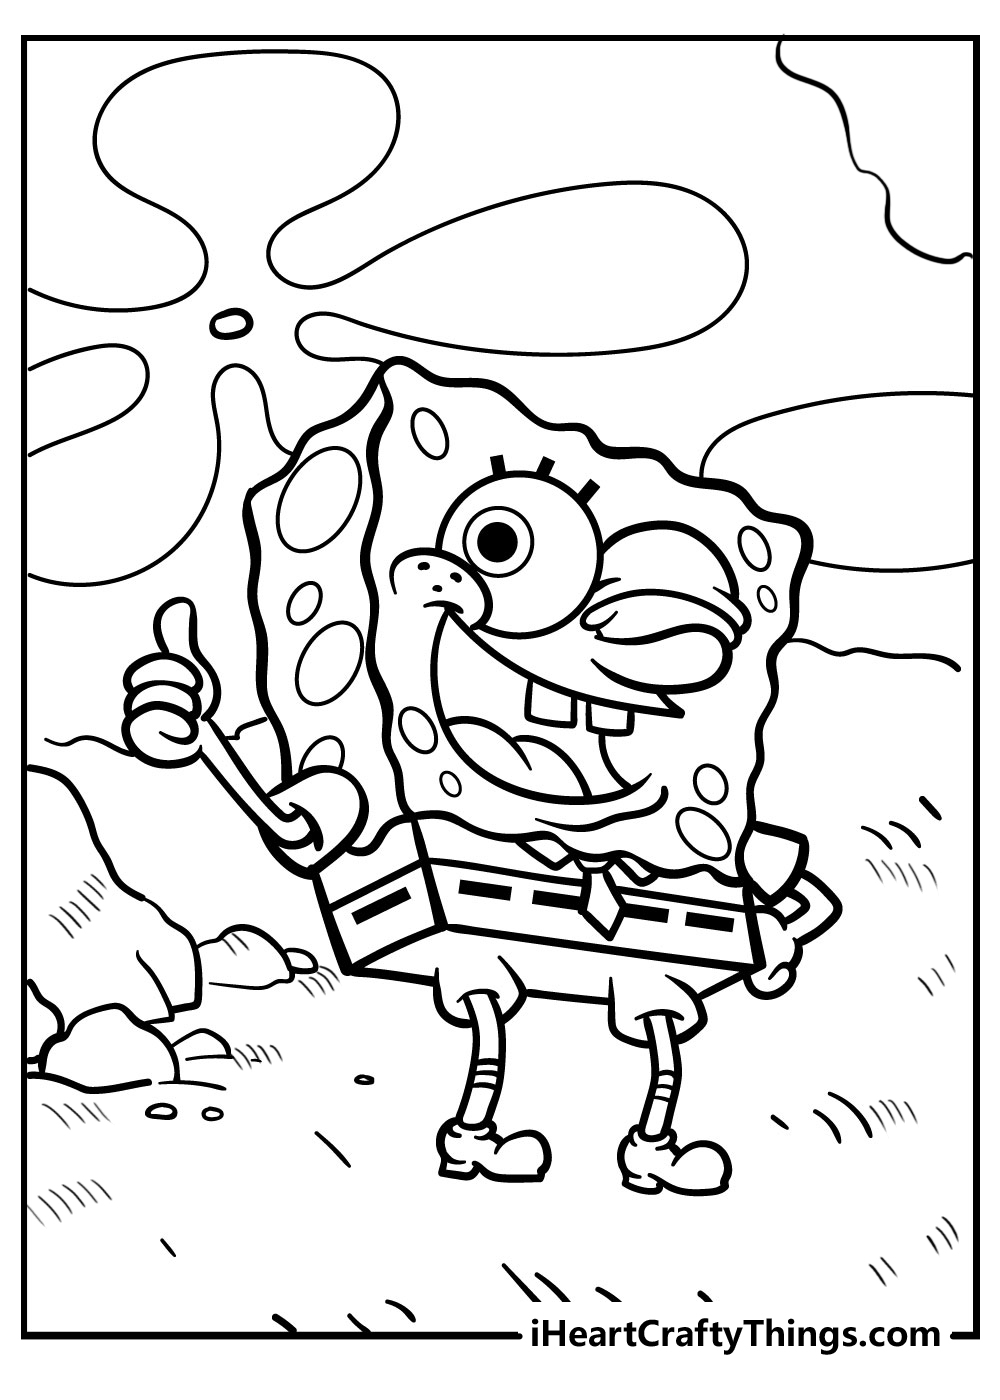 spongebob coloring book : spongebob coloring book for kids spongebob  coloring book for adults spongebob coloring book adult spongebob coloring  books